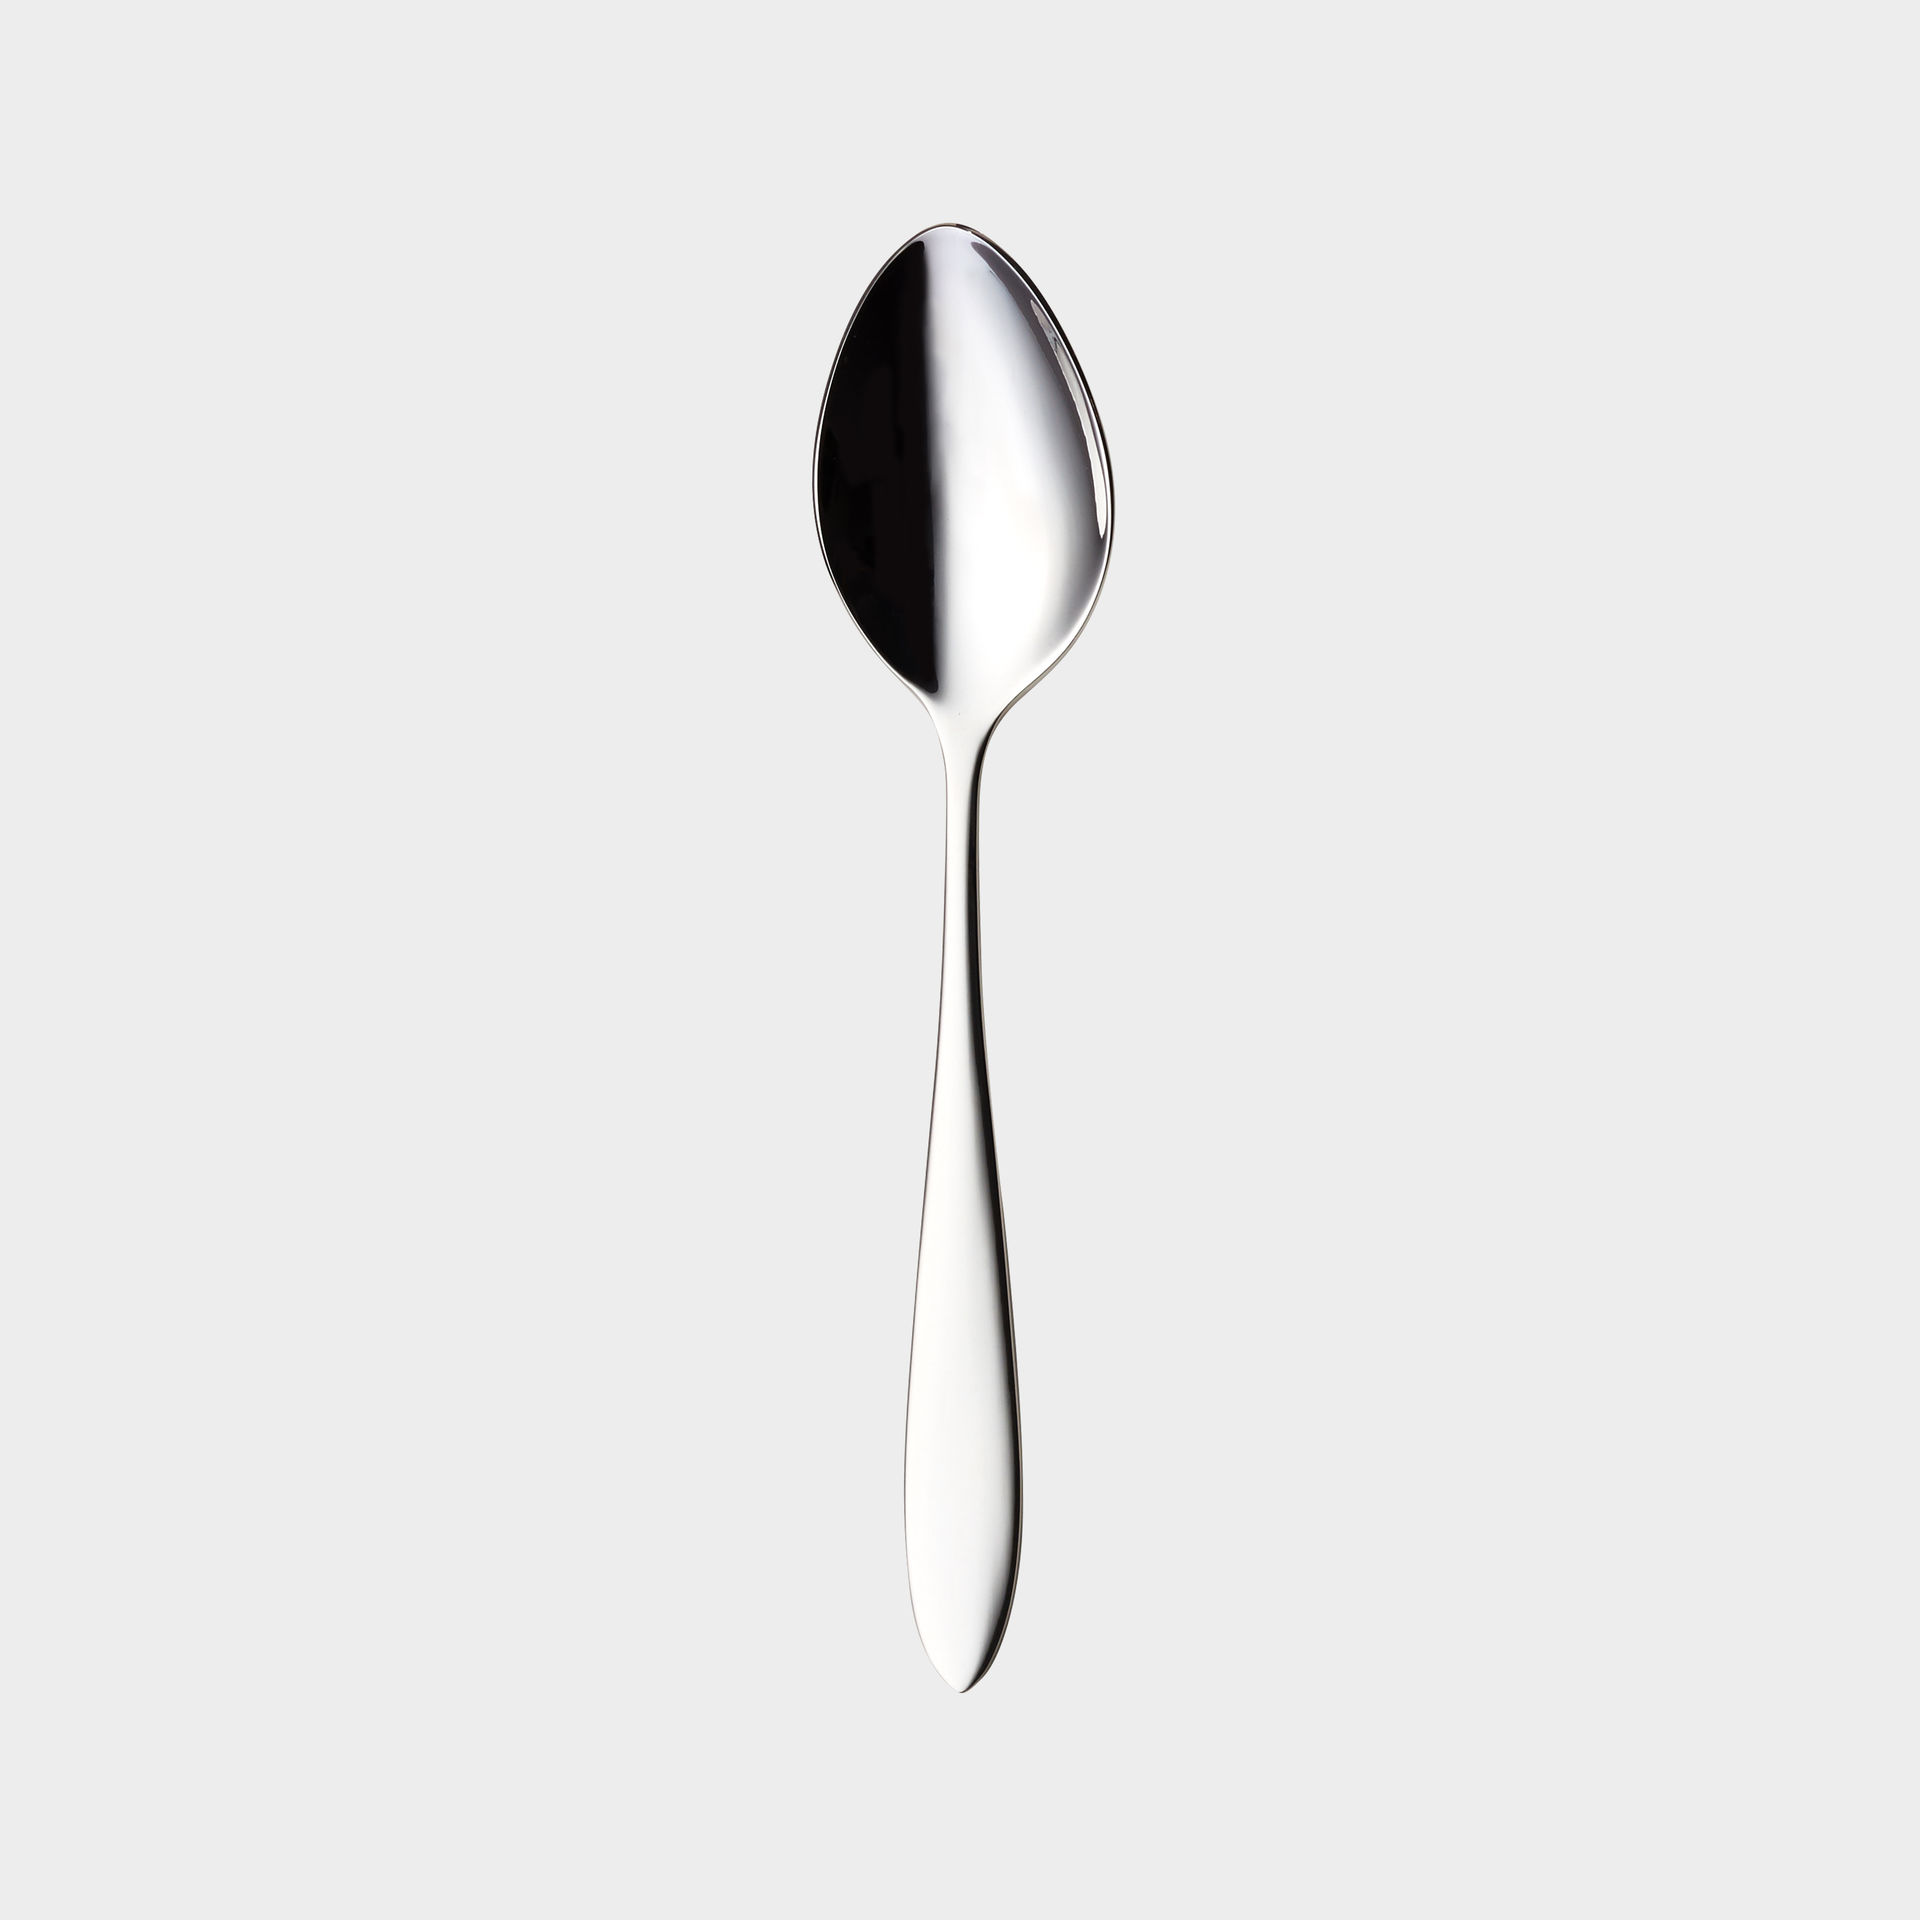 Fjord tea spoon product image